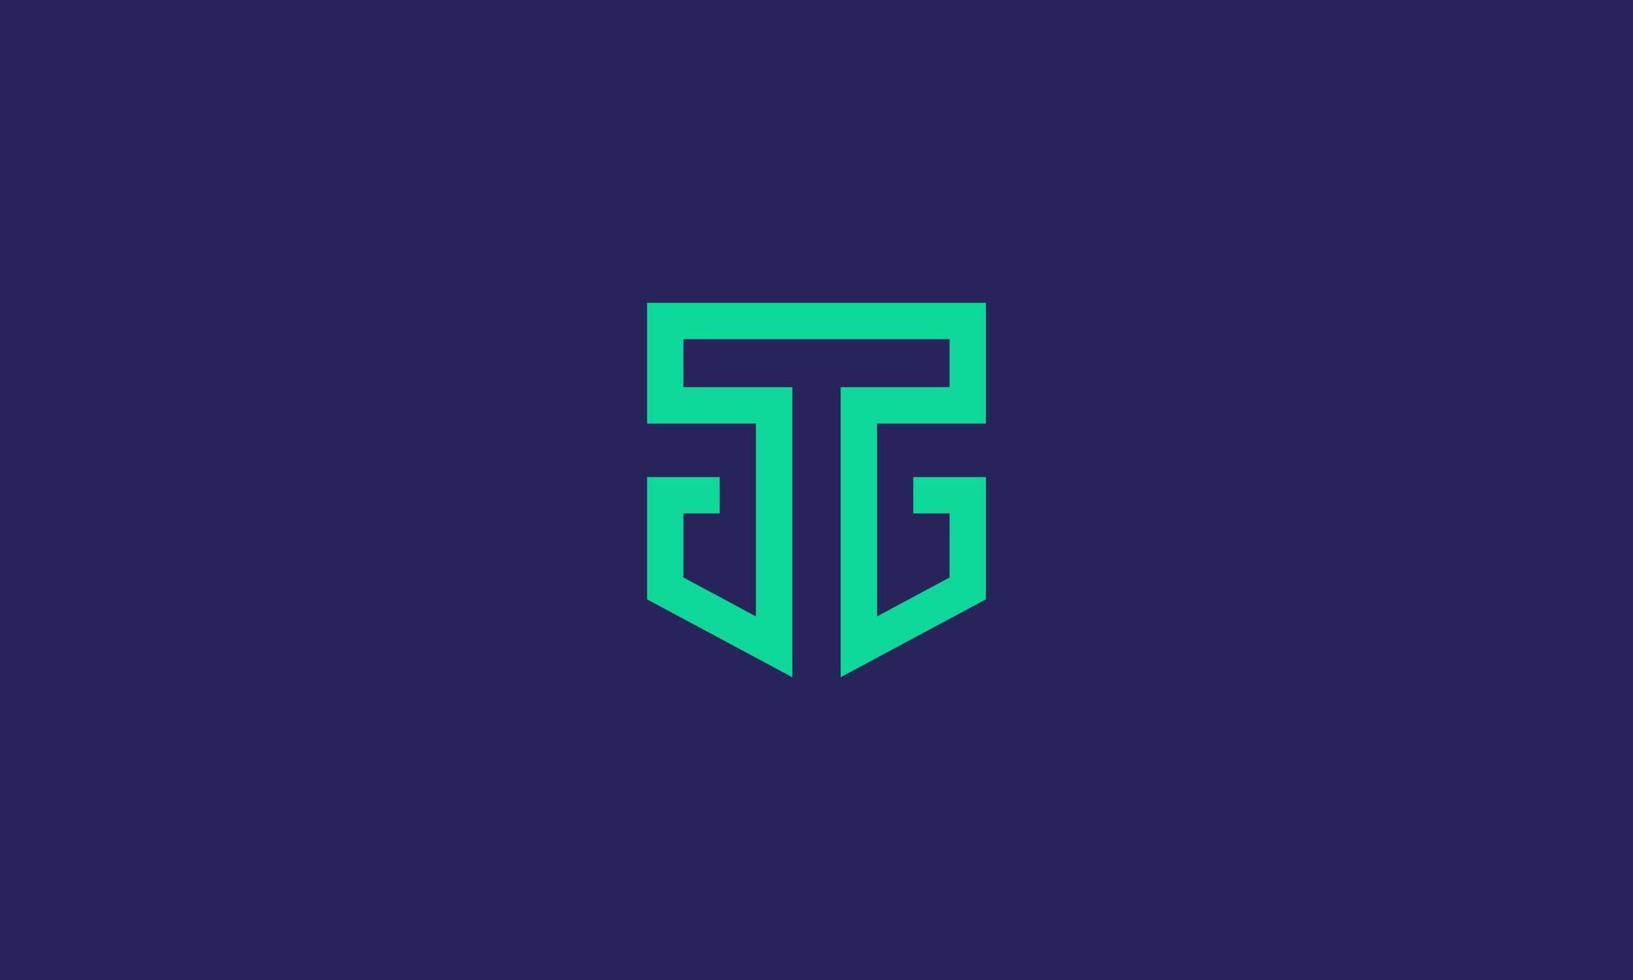 tg-logo. abstracte letter t en g in het schild. moderne en strakke lijnkunststijl. vector illustratie